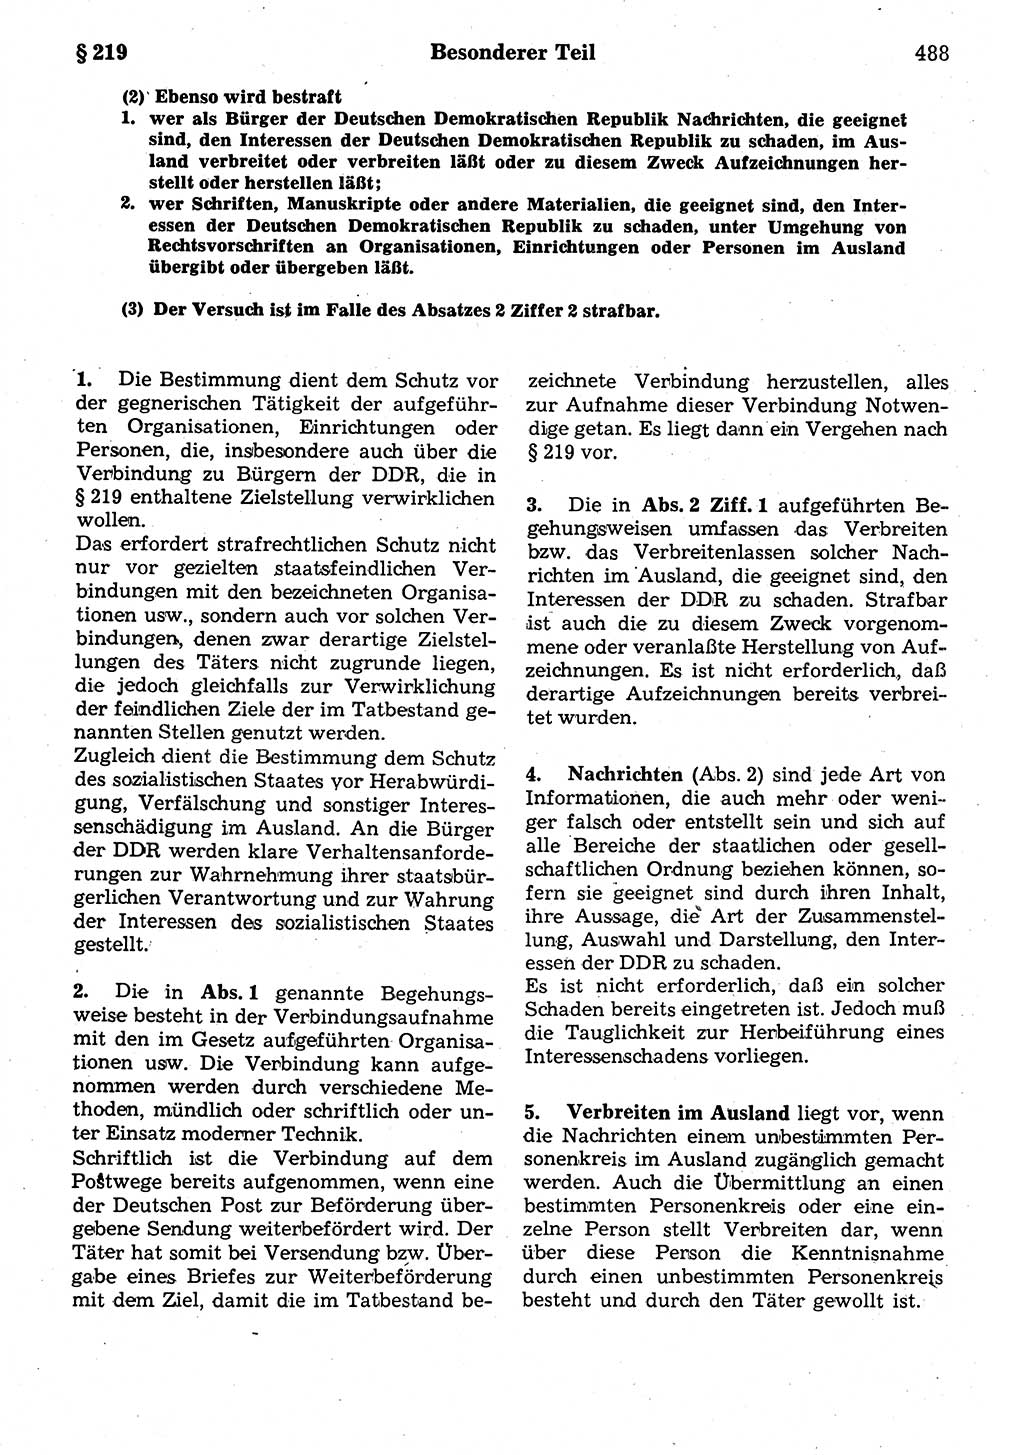 Strafrecht der Deutschen Demokratischen Republik (DDR), Kommentar zum Strafgesetzbuch (StGB) 1987, Seite 488 (Strafr. DDR Komm. StGB 1987, S. 488)